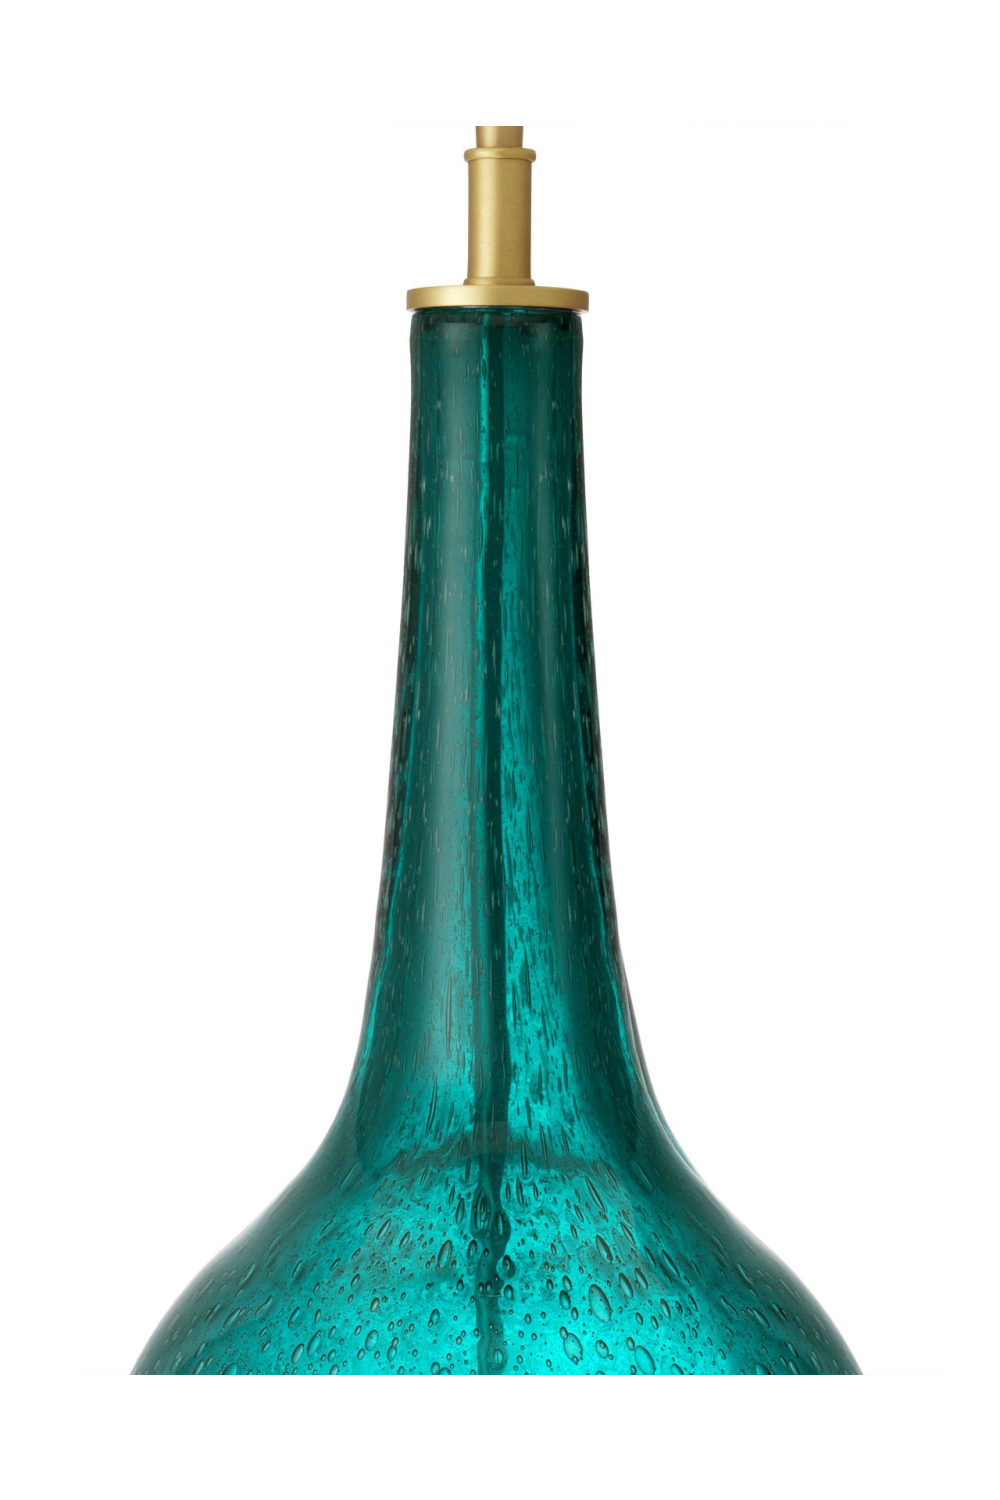 Turquoise Glass Table Lamp | Eichholtz Massaro | OROA